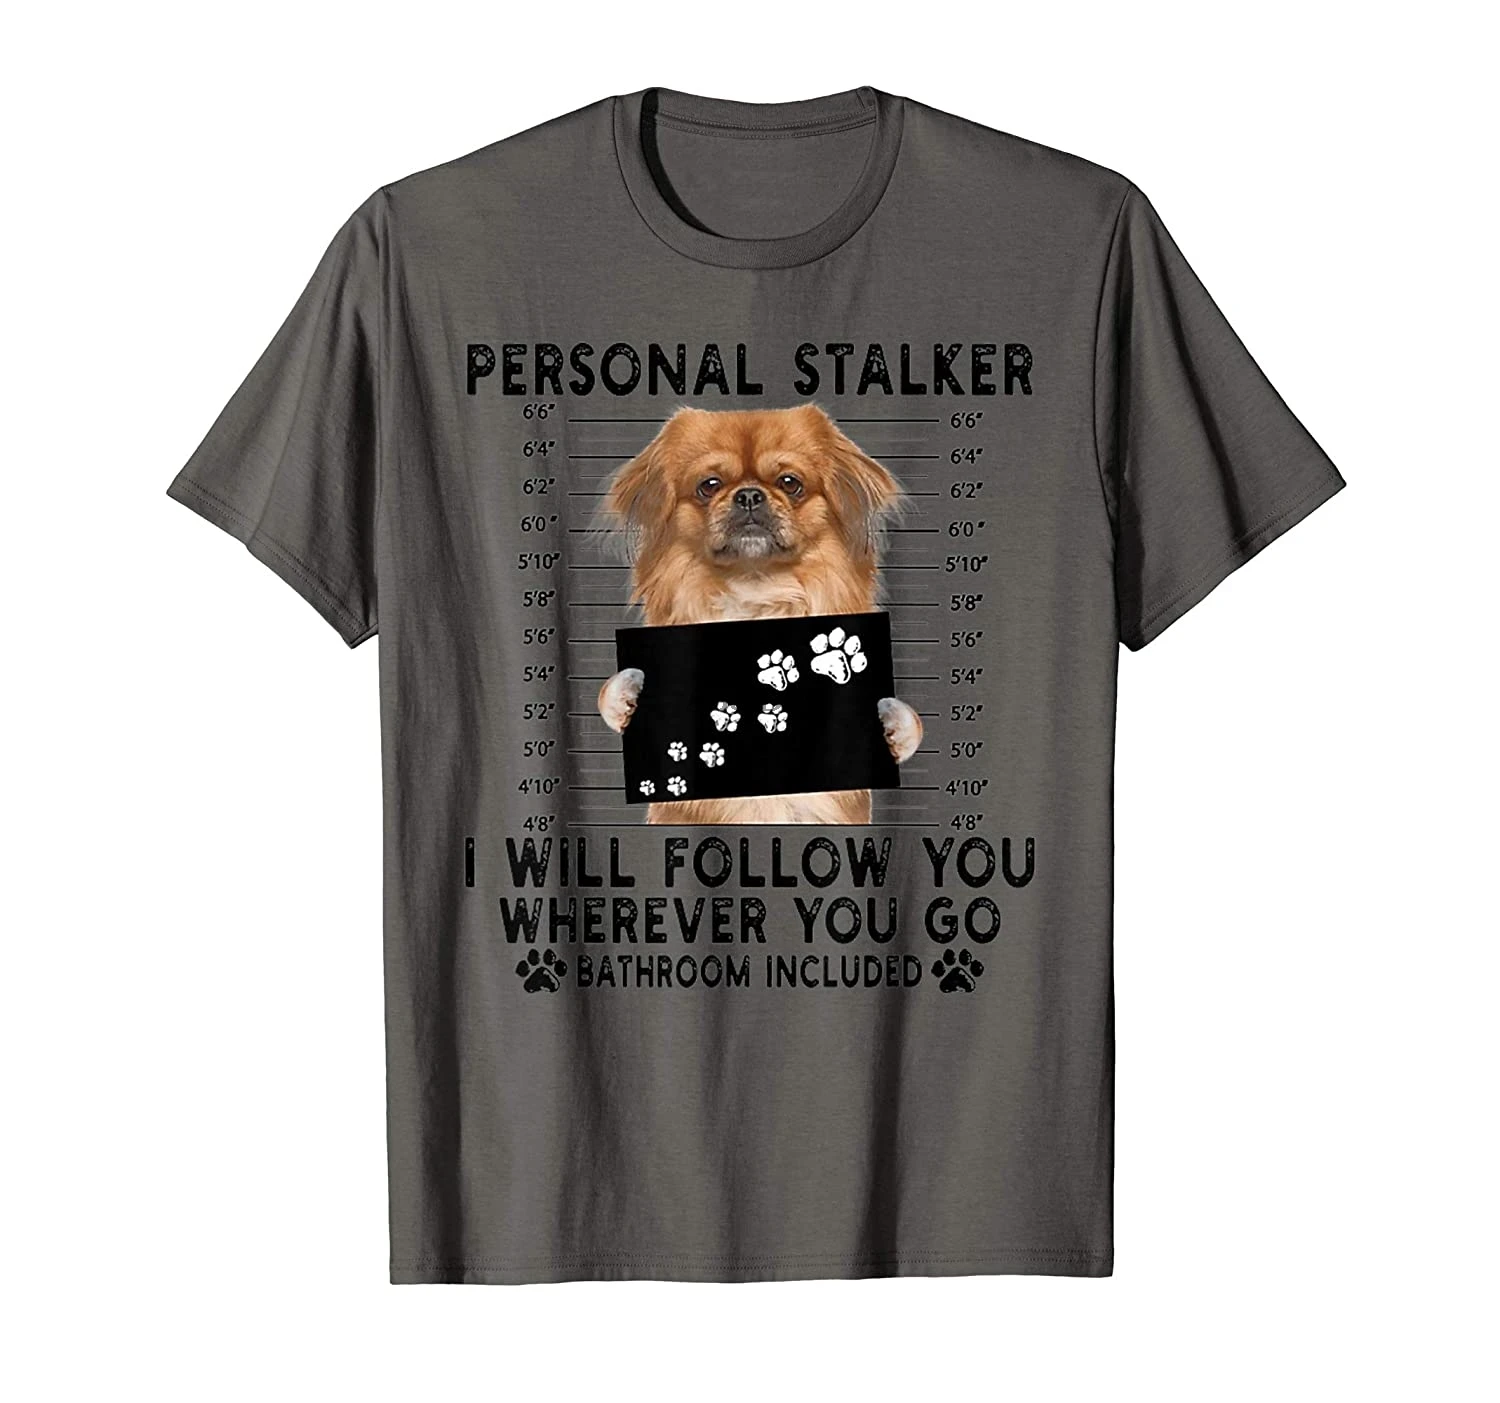 

Персональный сталкер, я следую за вами, Подарочная футболка с Пекинским любовником